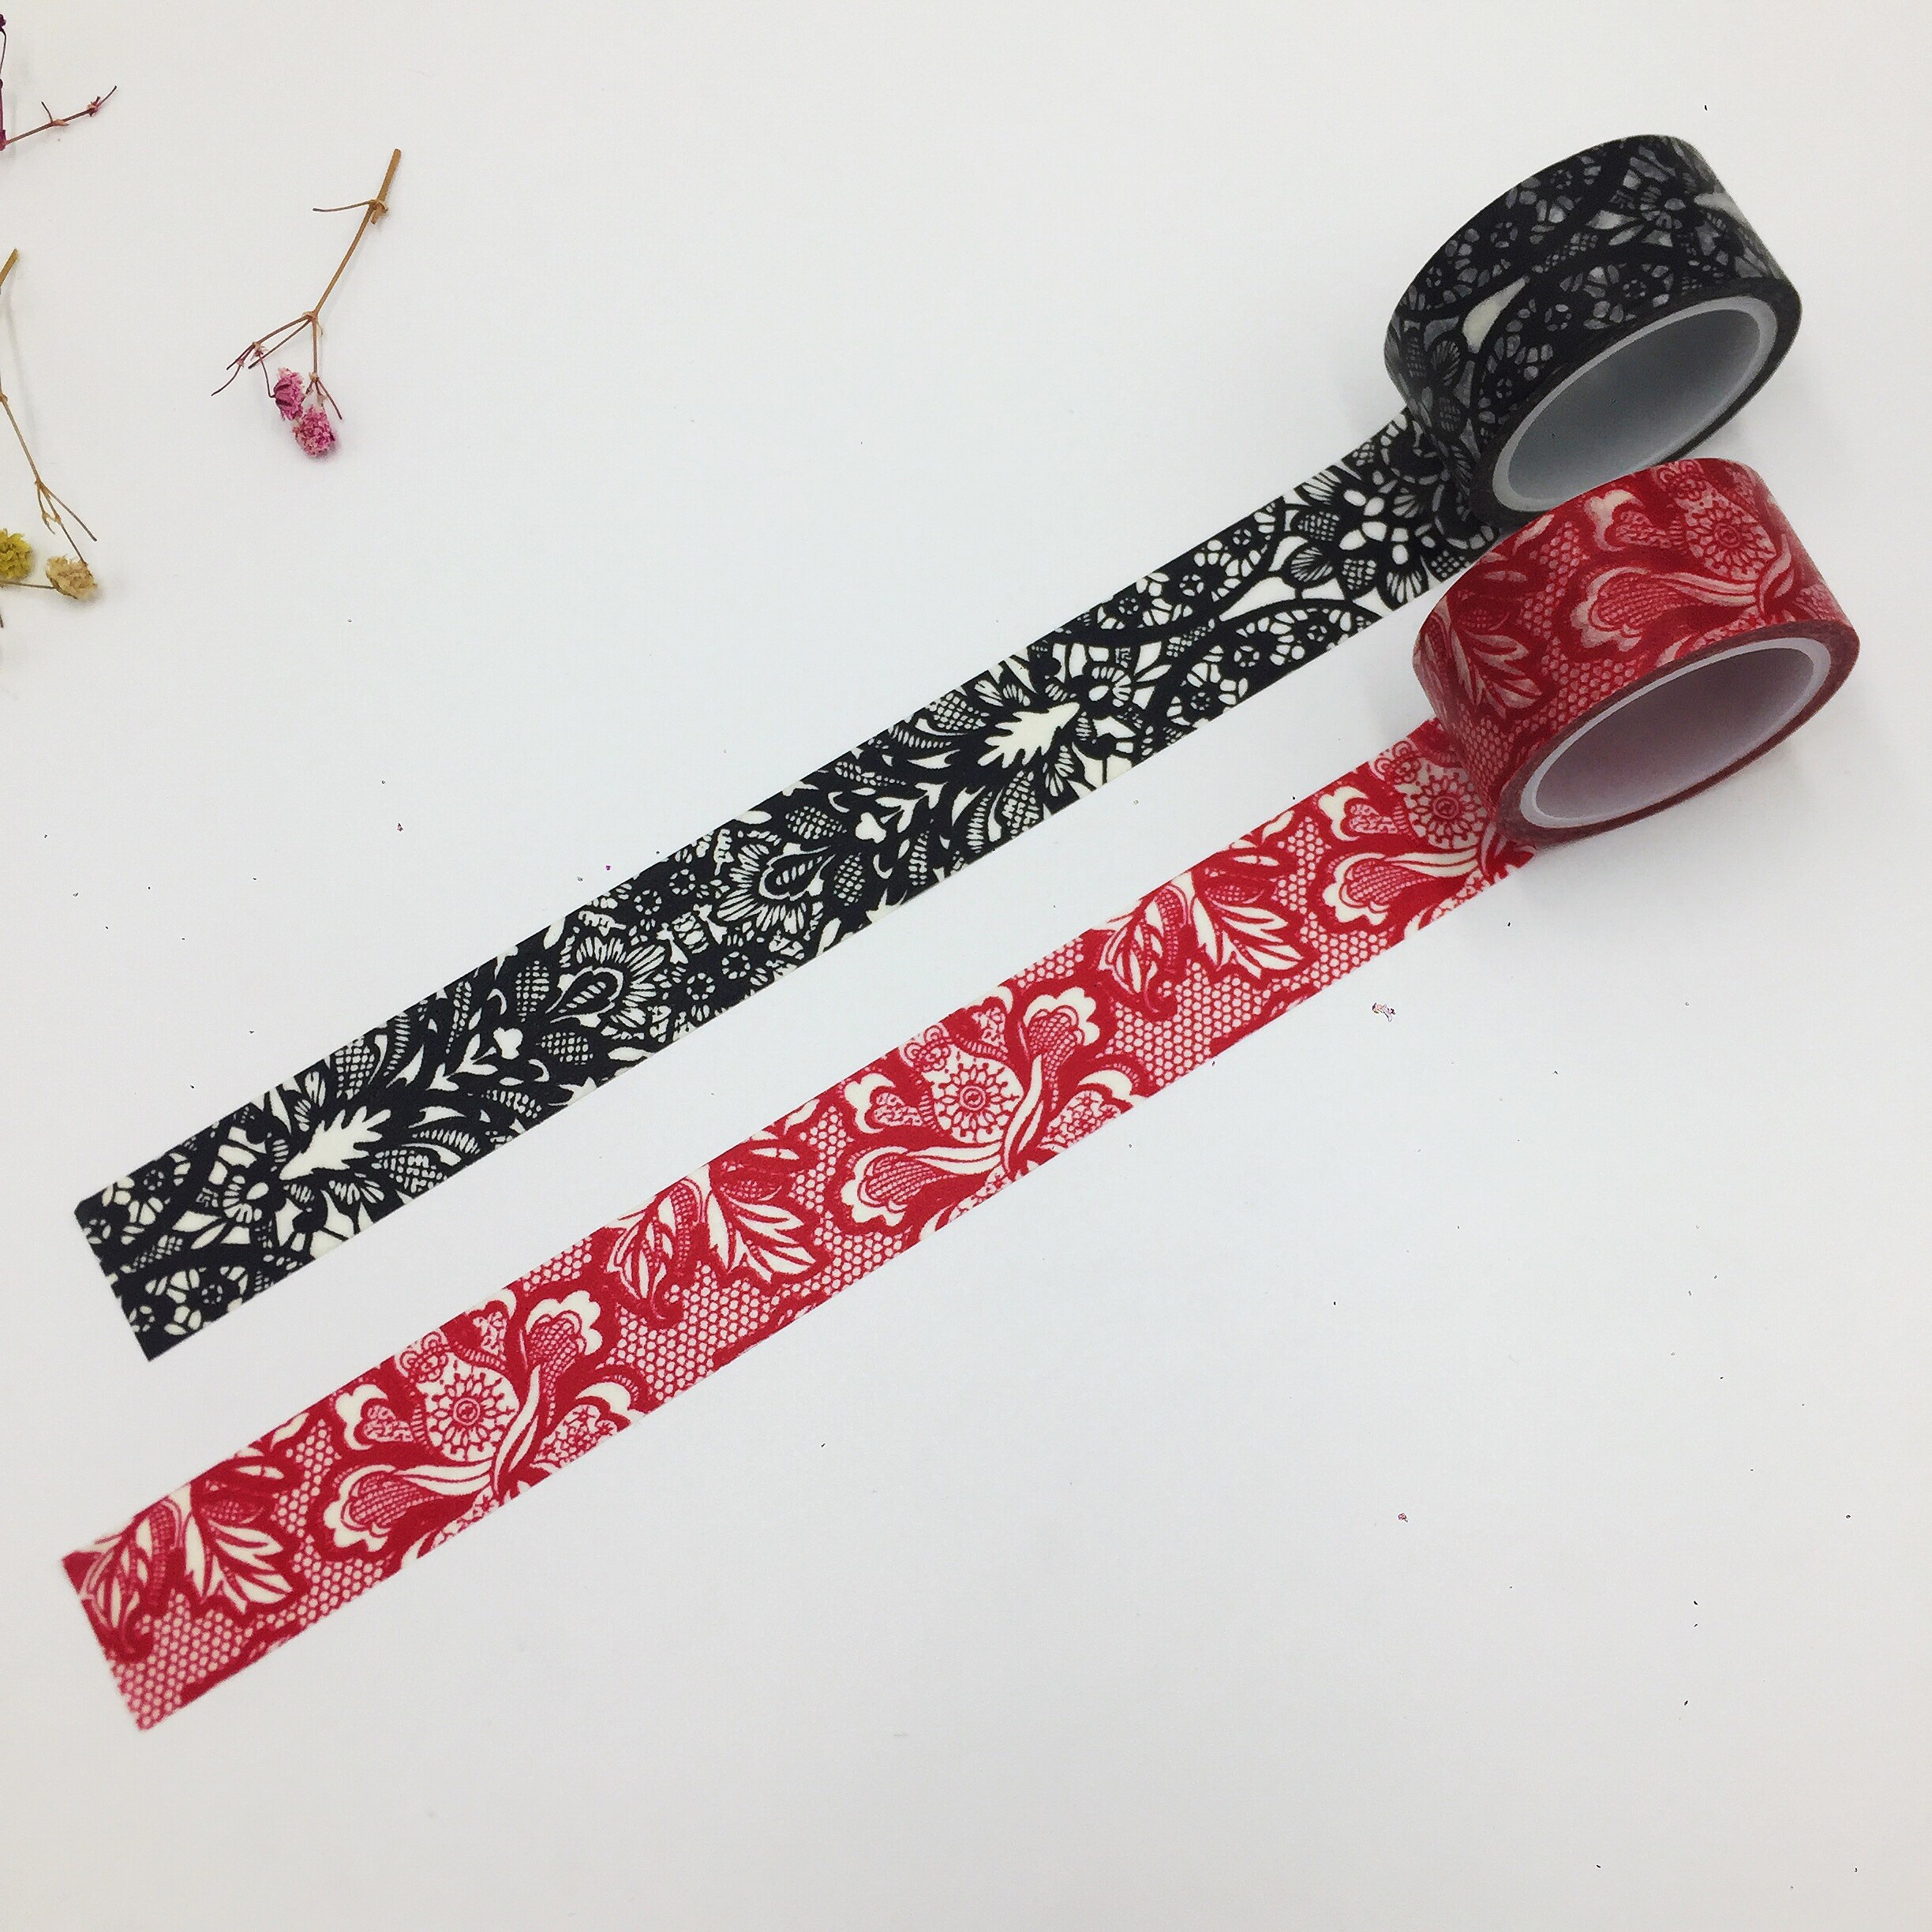 Mooie washi papier tape/20mm * 5m Rode kant en Zwart kant masking japan washi tape